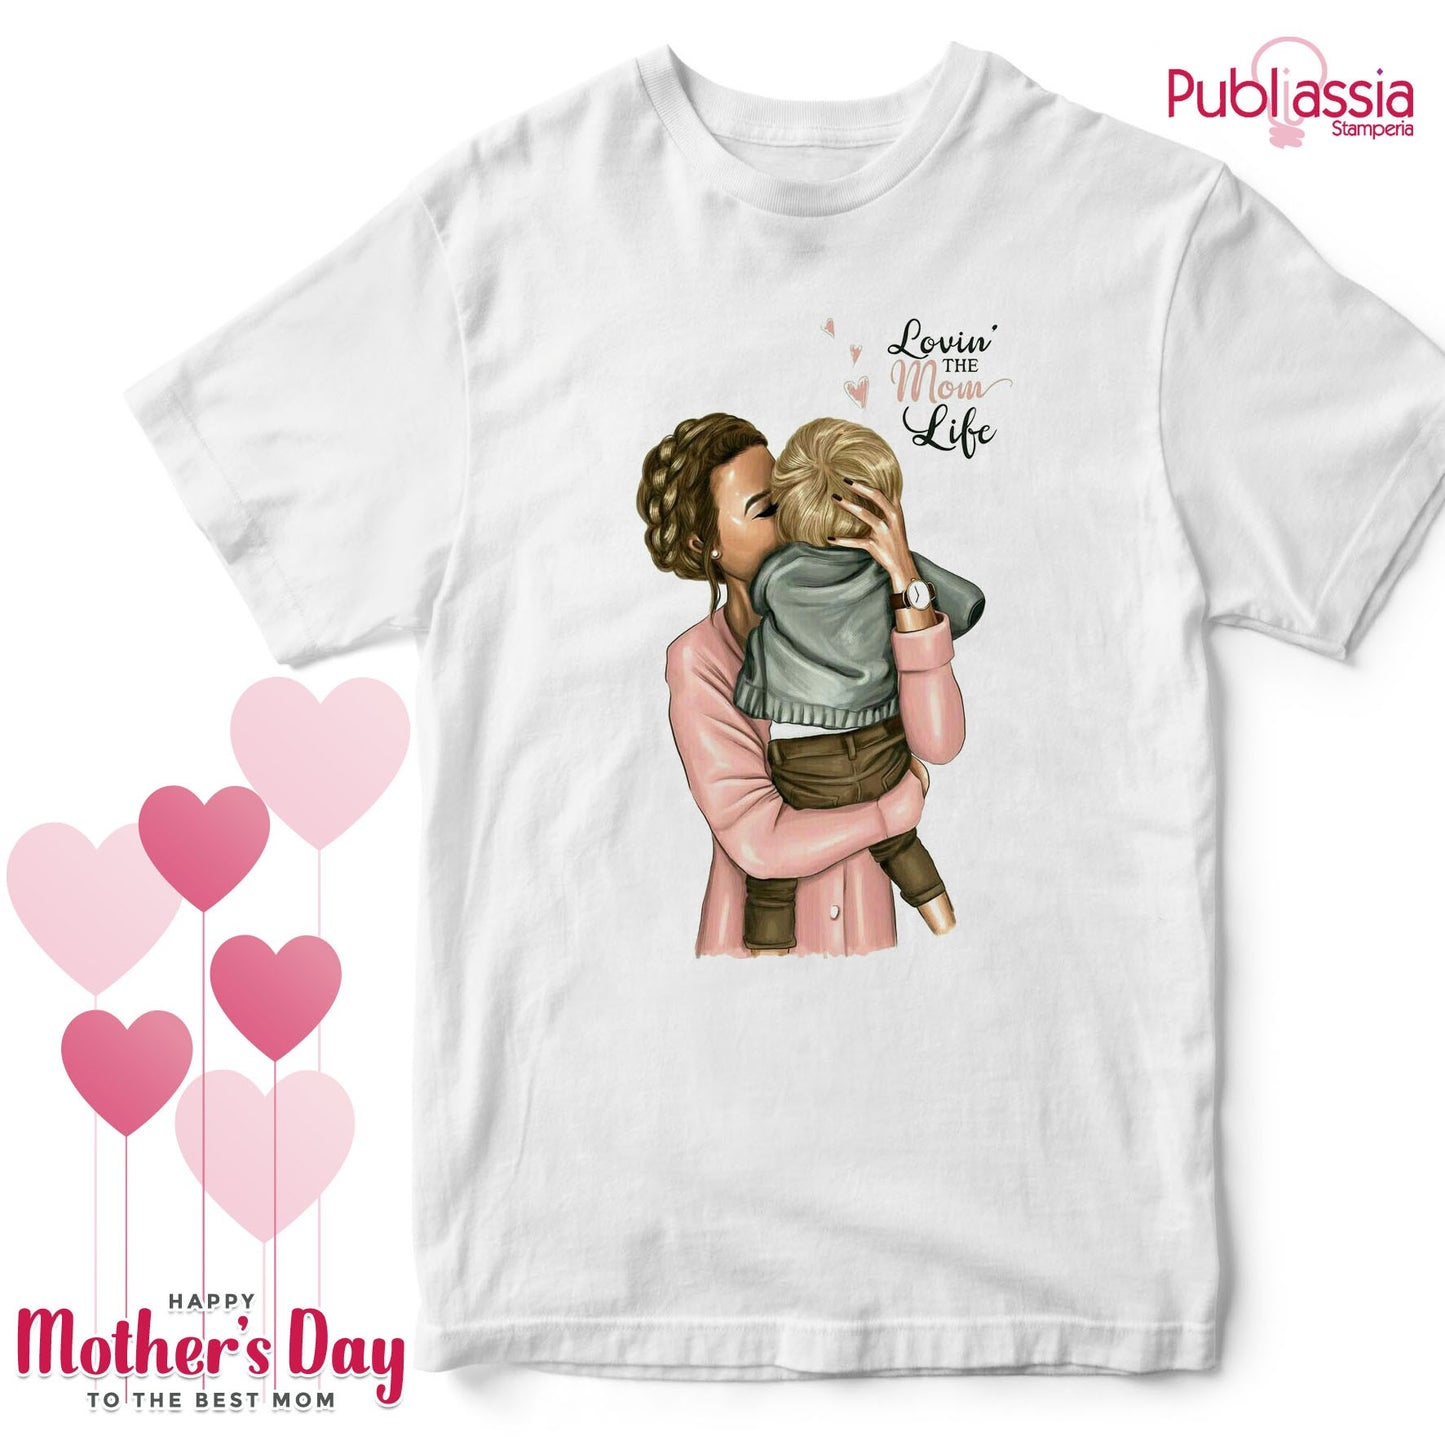 Lovin' the mom life - Festa della Mamma t-shirt